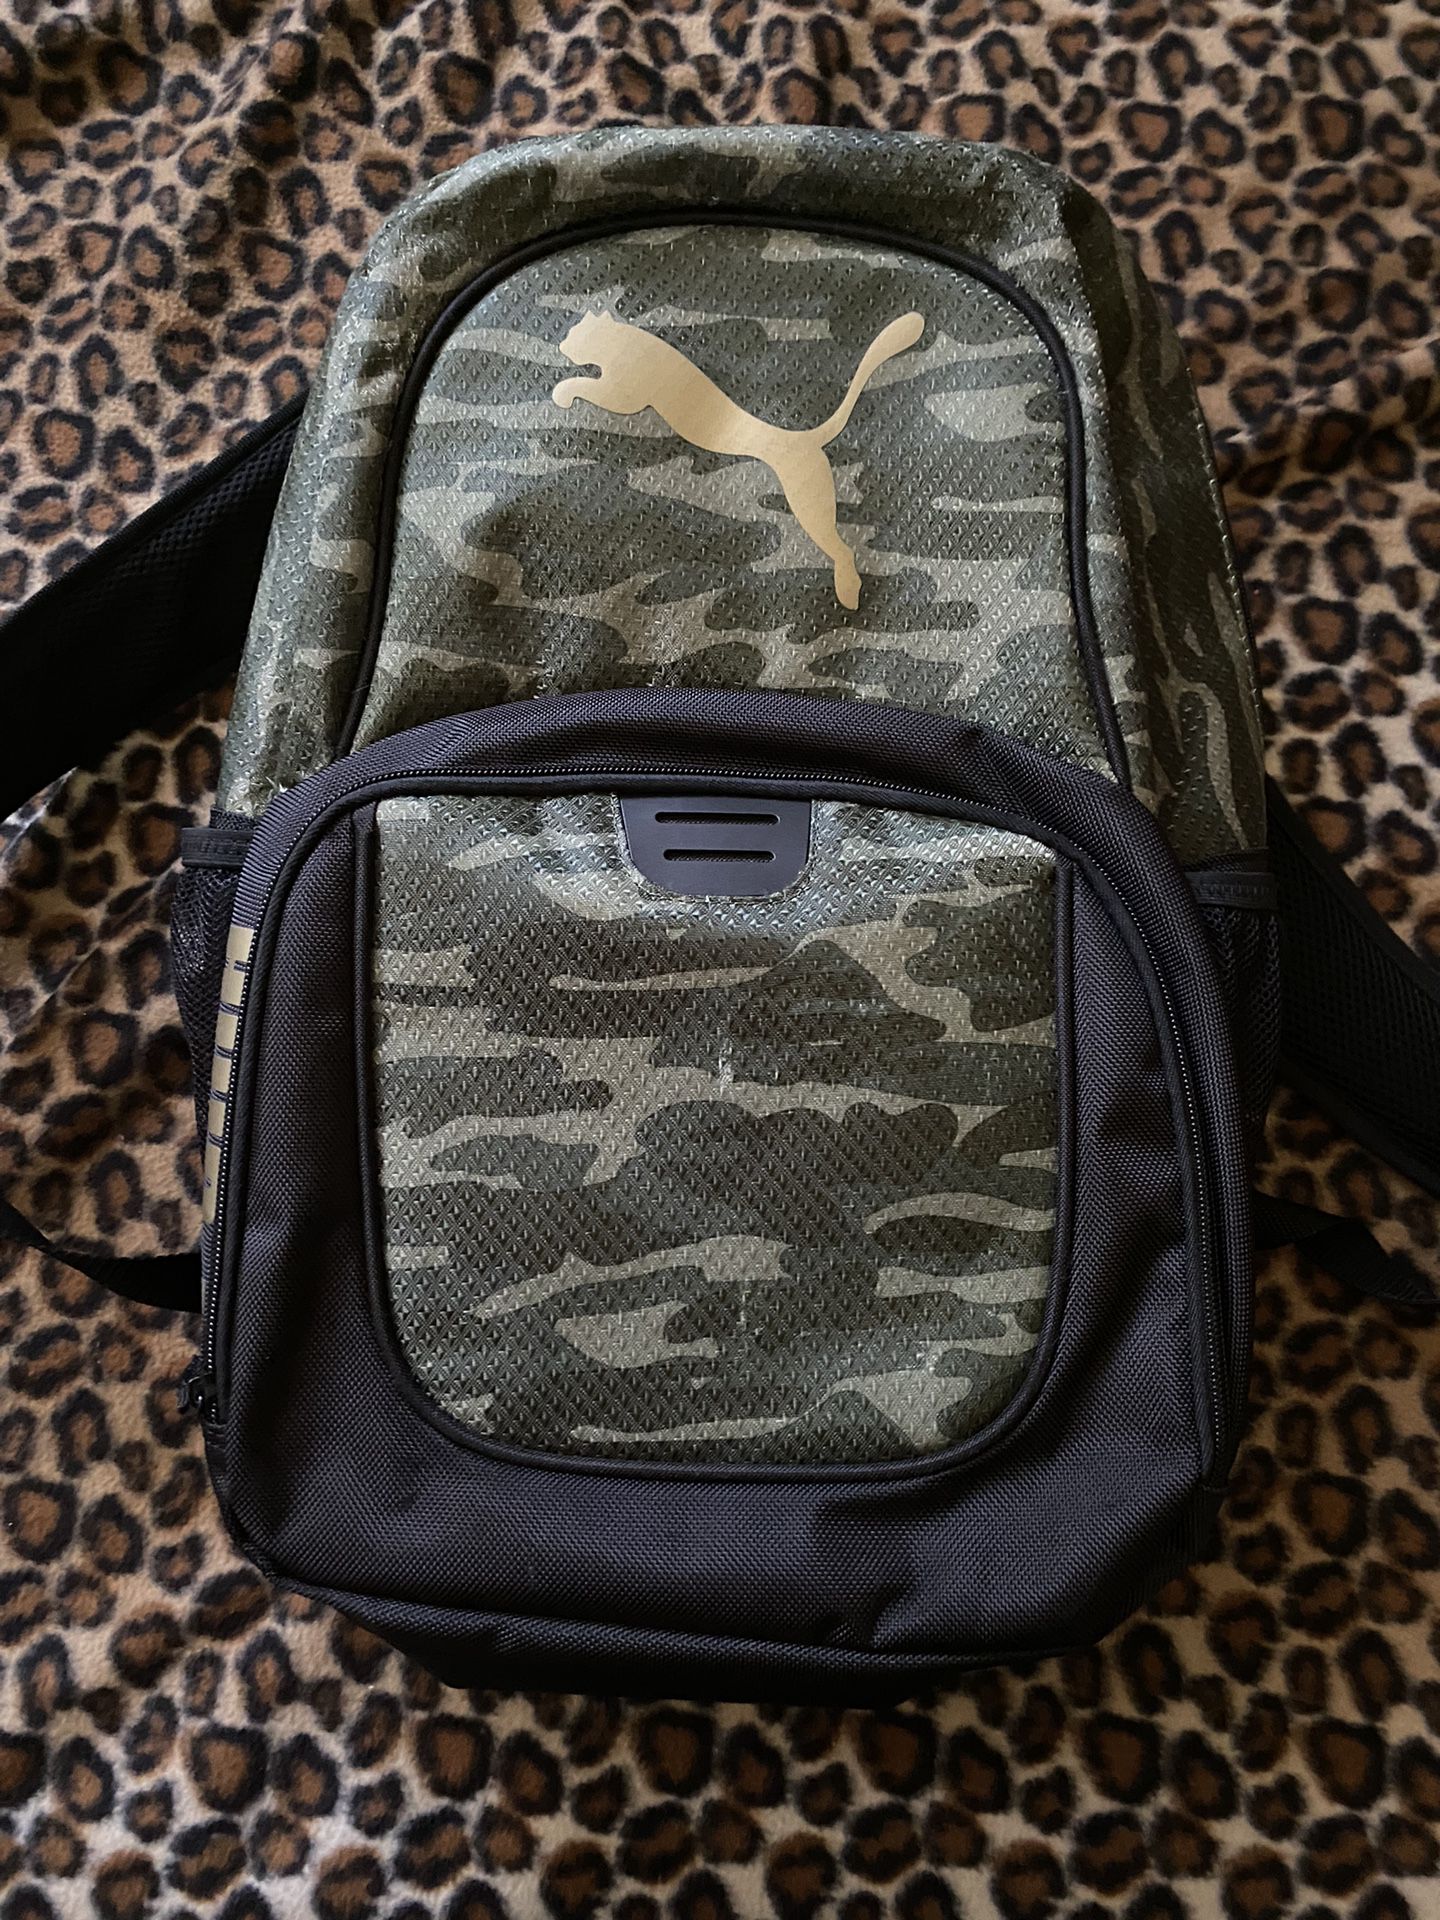 Puma Back Pack 